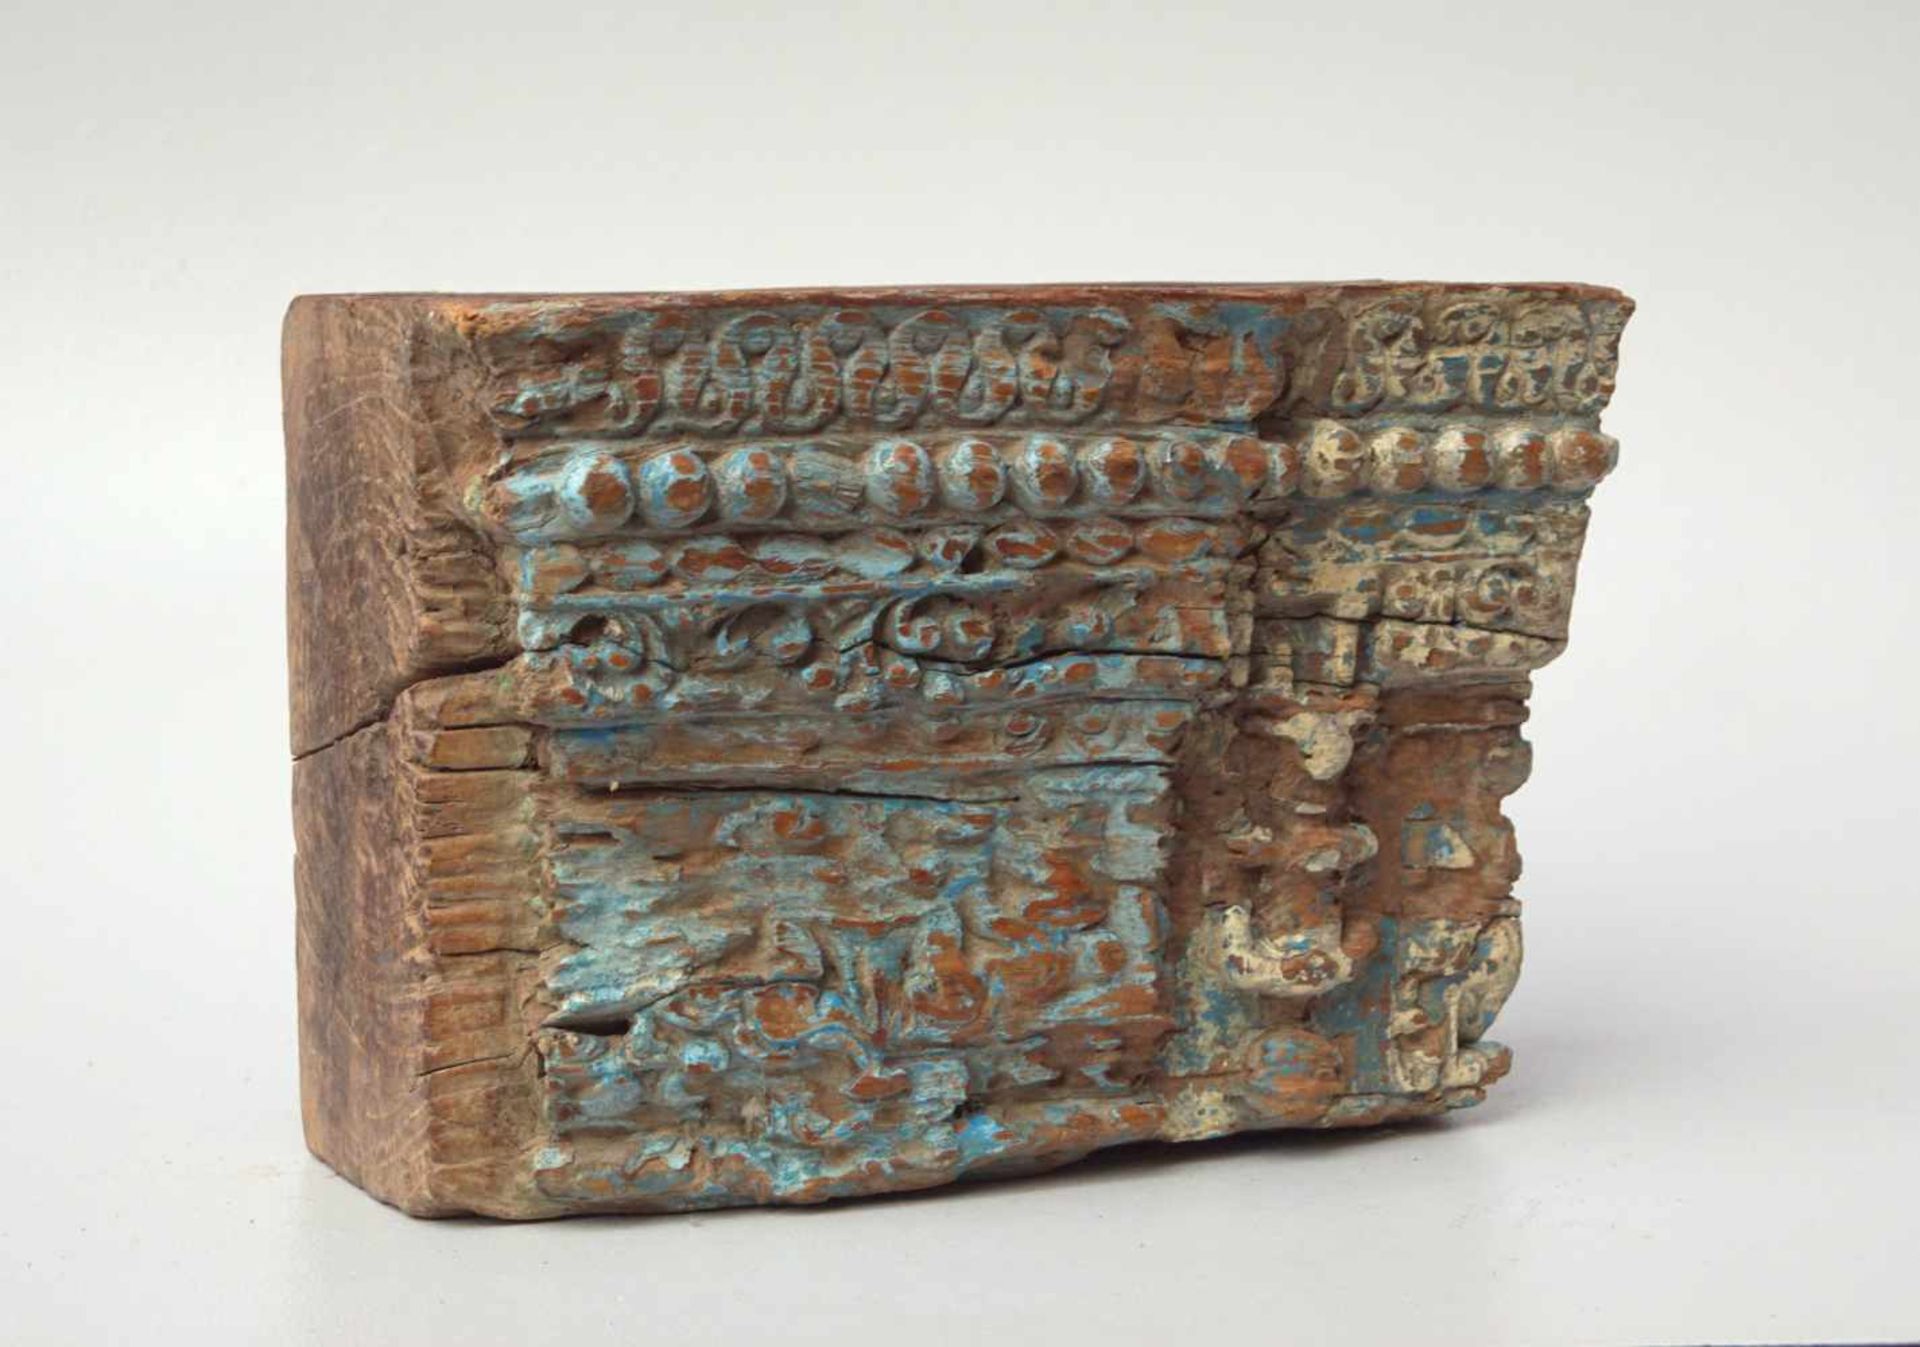 Indisches KapitellMahagonyholz geschnitzt, Fragment, Reste von farbiger Fassung, Maße: ca. 30 x 22 x